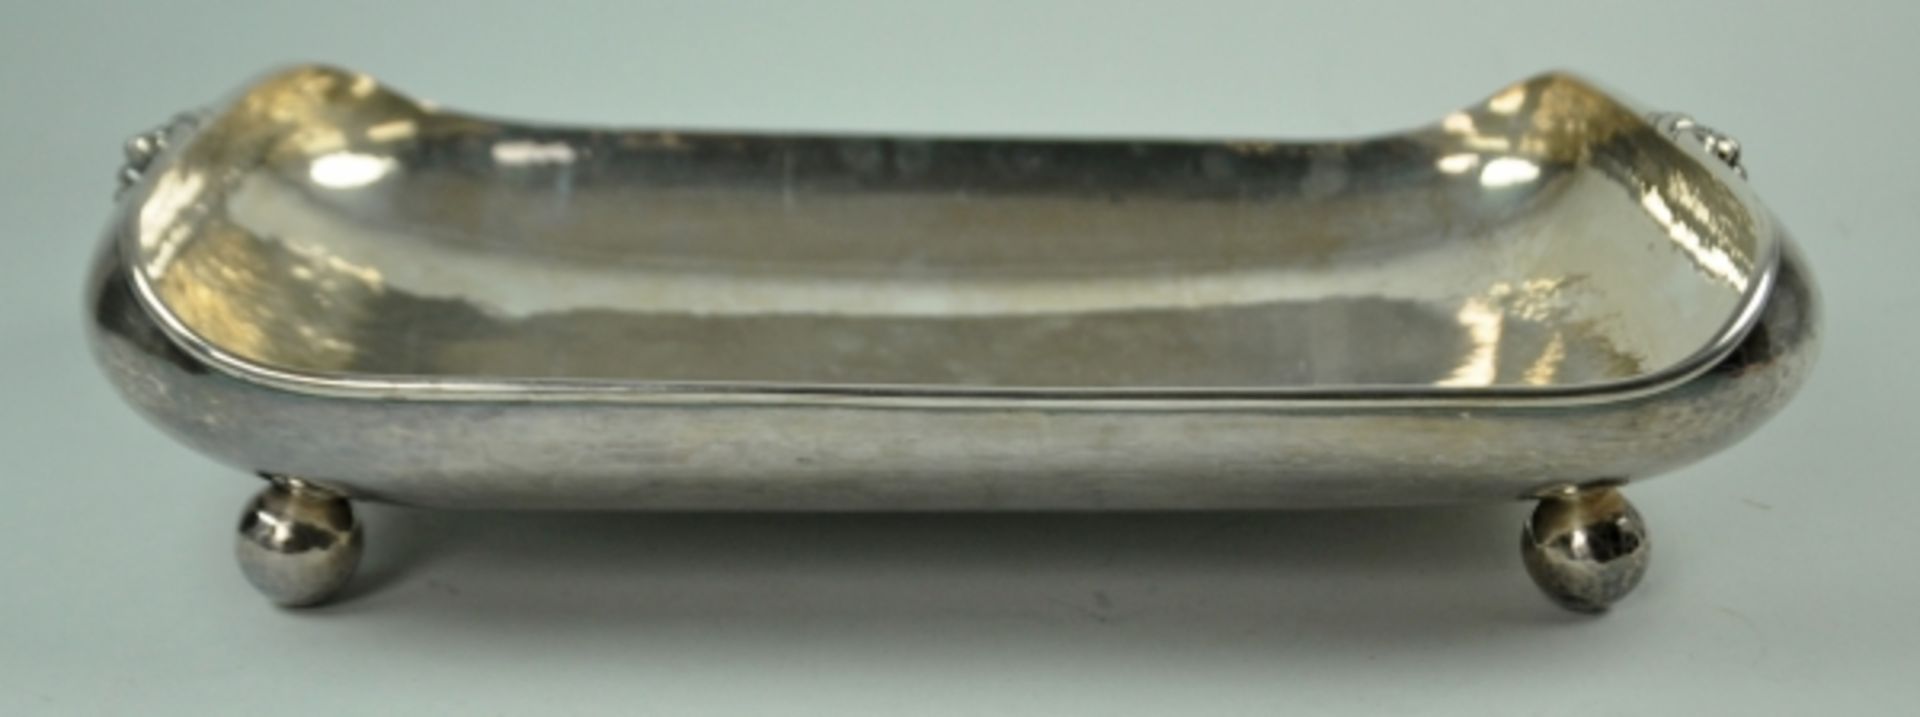 SCHALE rechteckige Form mit abgerundeten Ecken, hochgewölbter Rand, auf vier Kugelfüßen, - Bild 2 aus 5